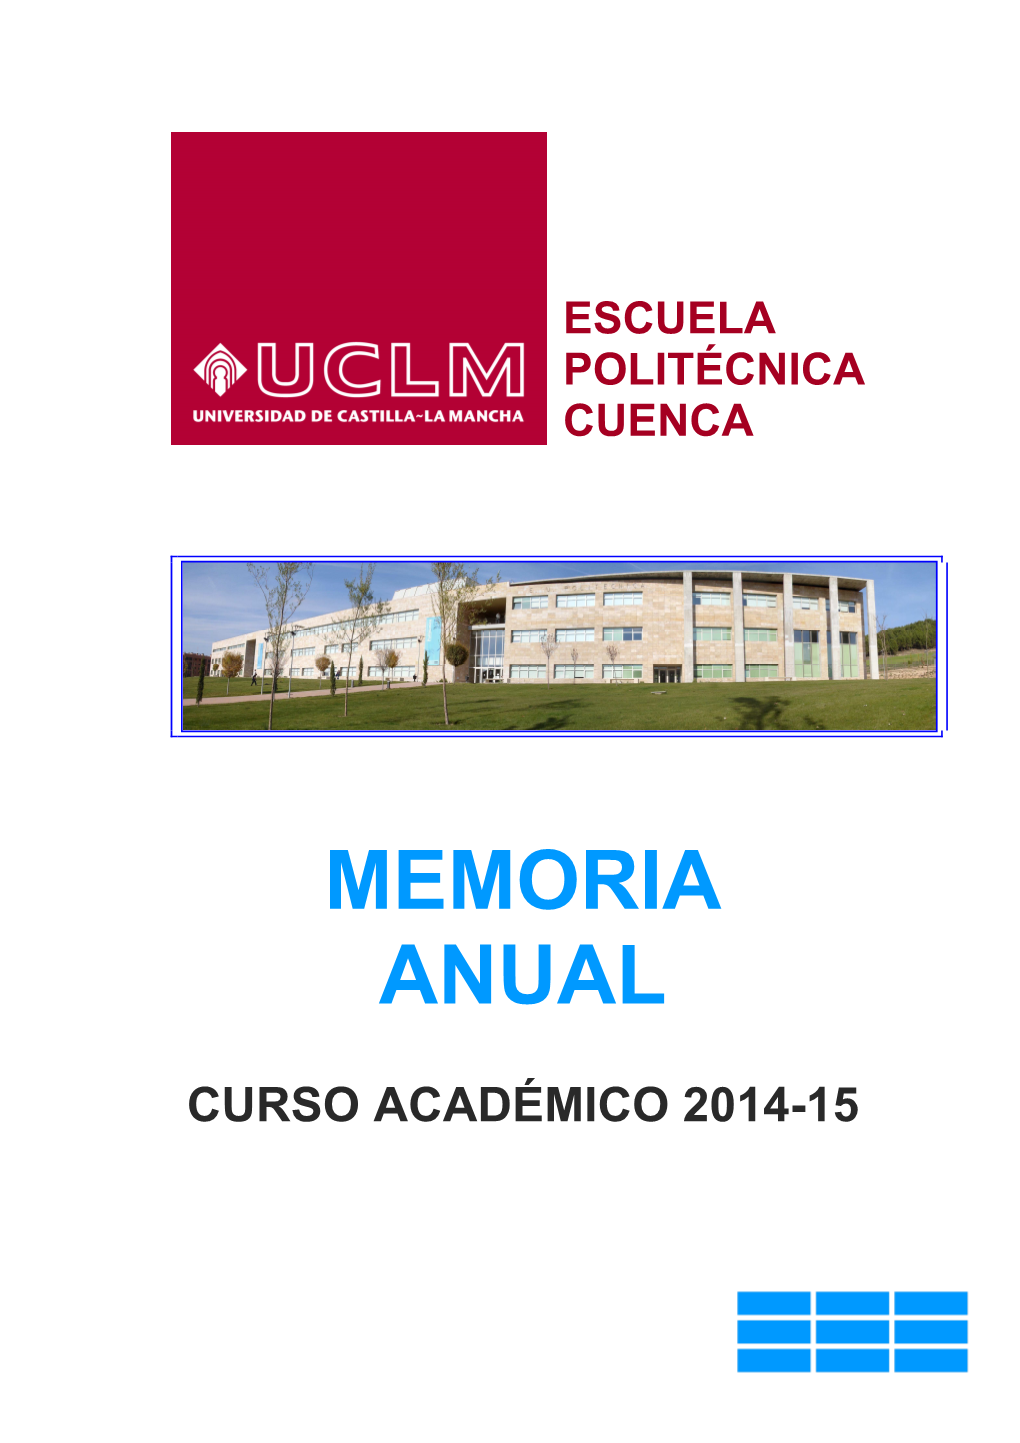 Escuela Politécnica Cuenca